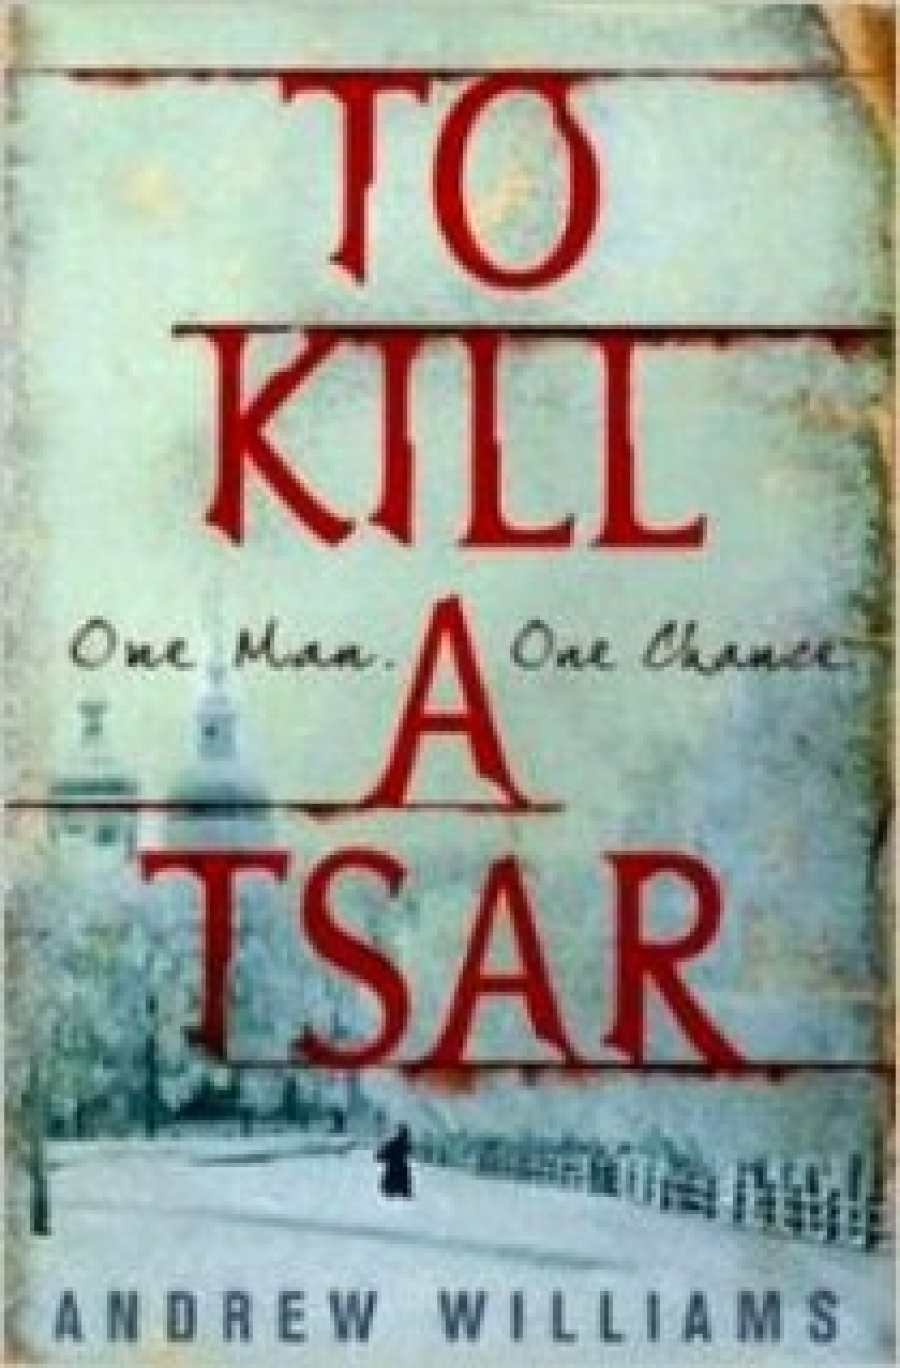 Williams A. To Kill a Tsar 